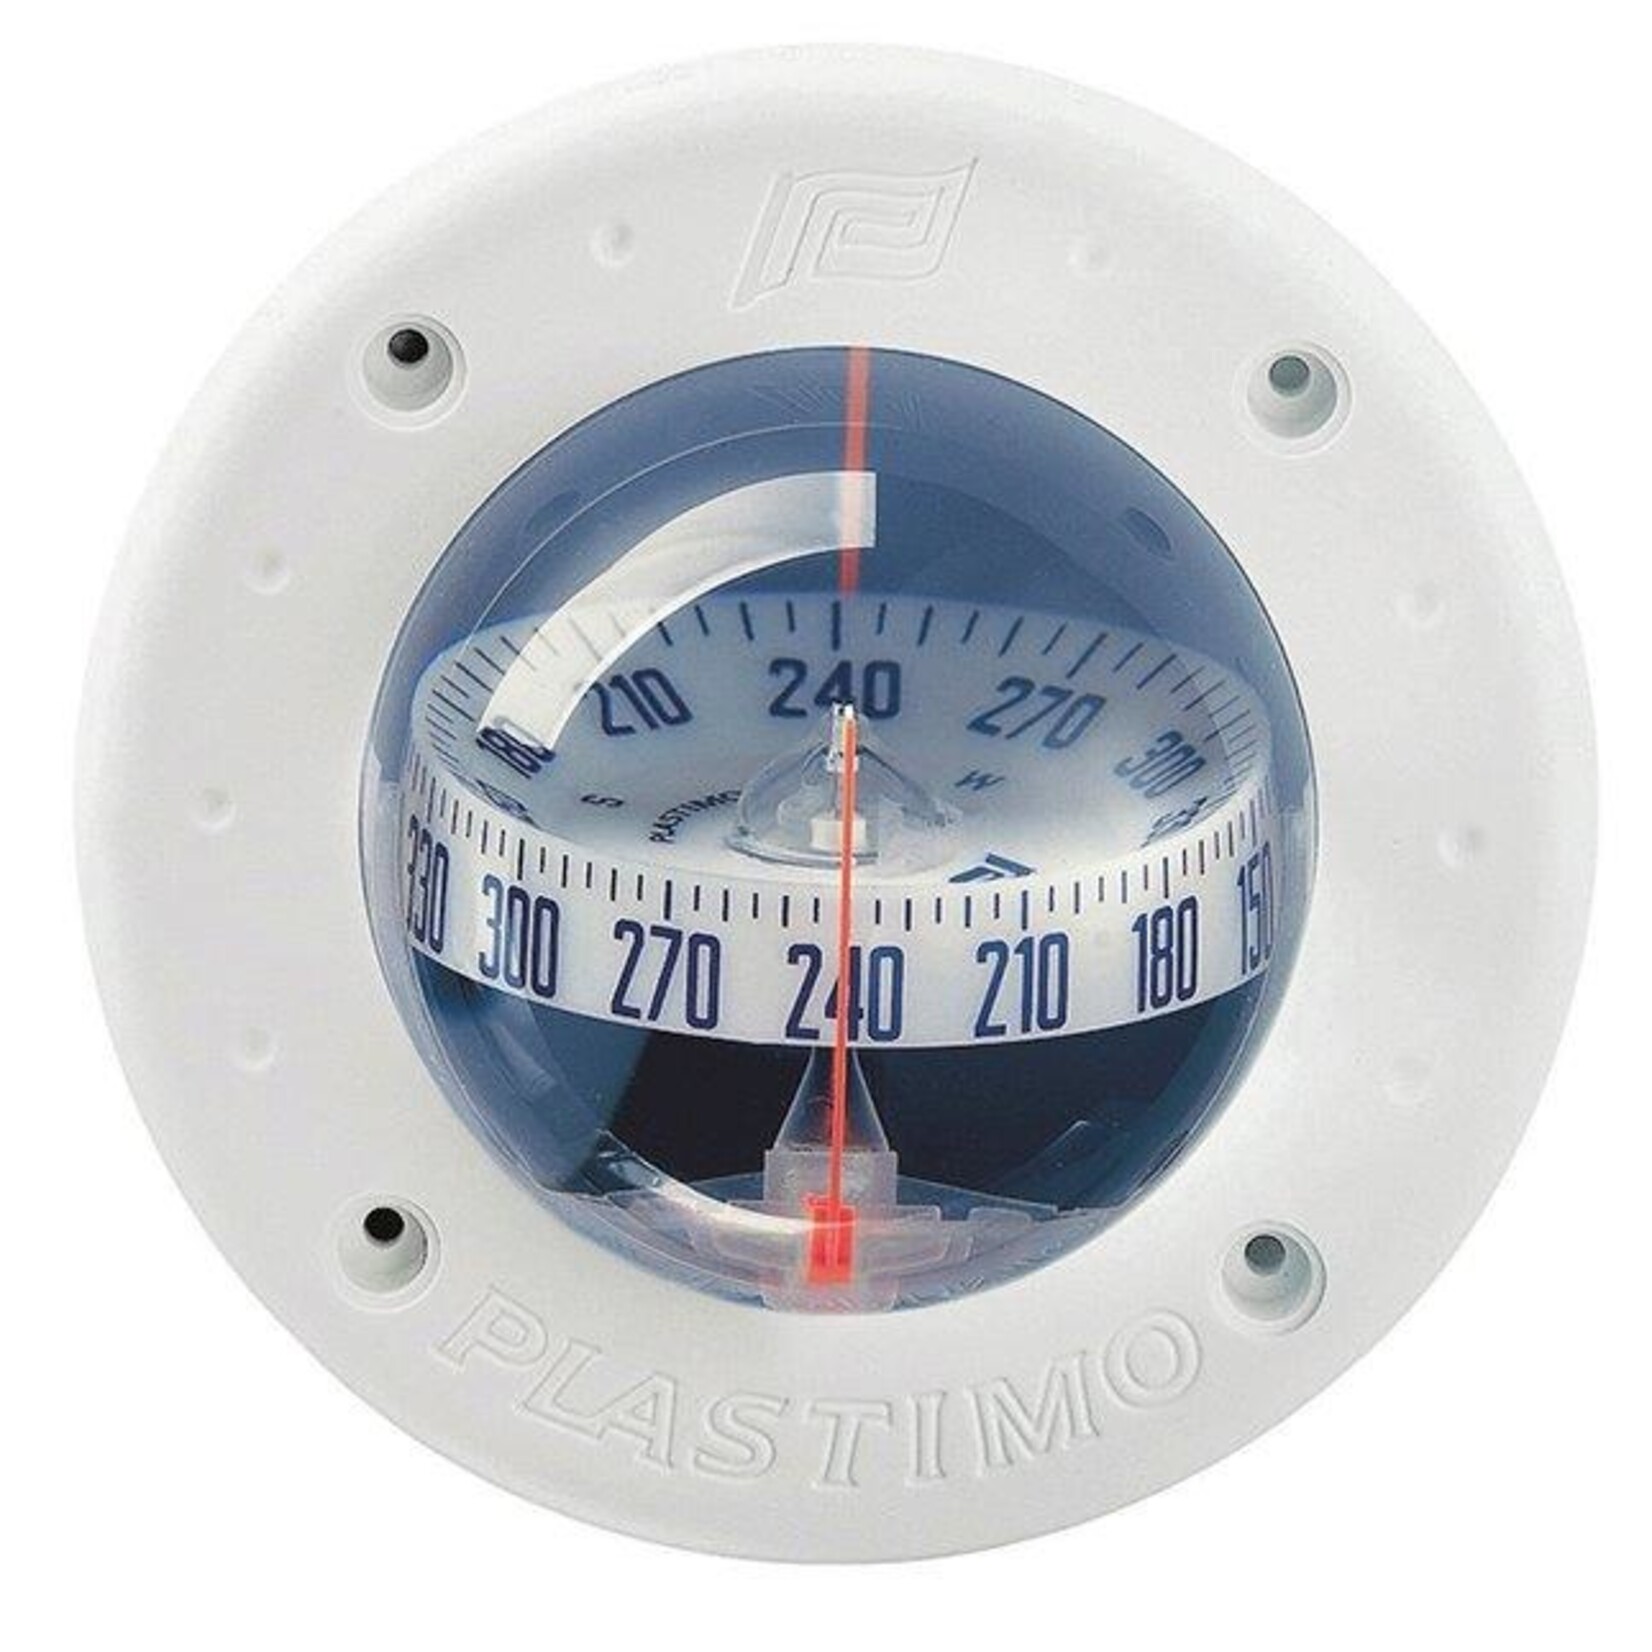 Plastimo Compass mini-c white z/abc